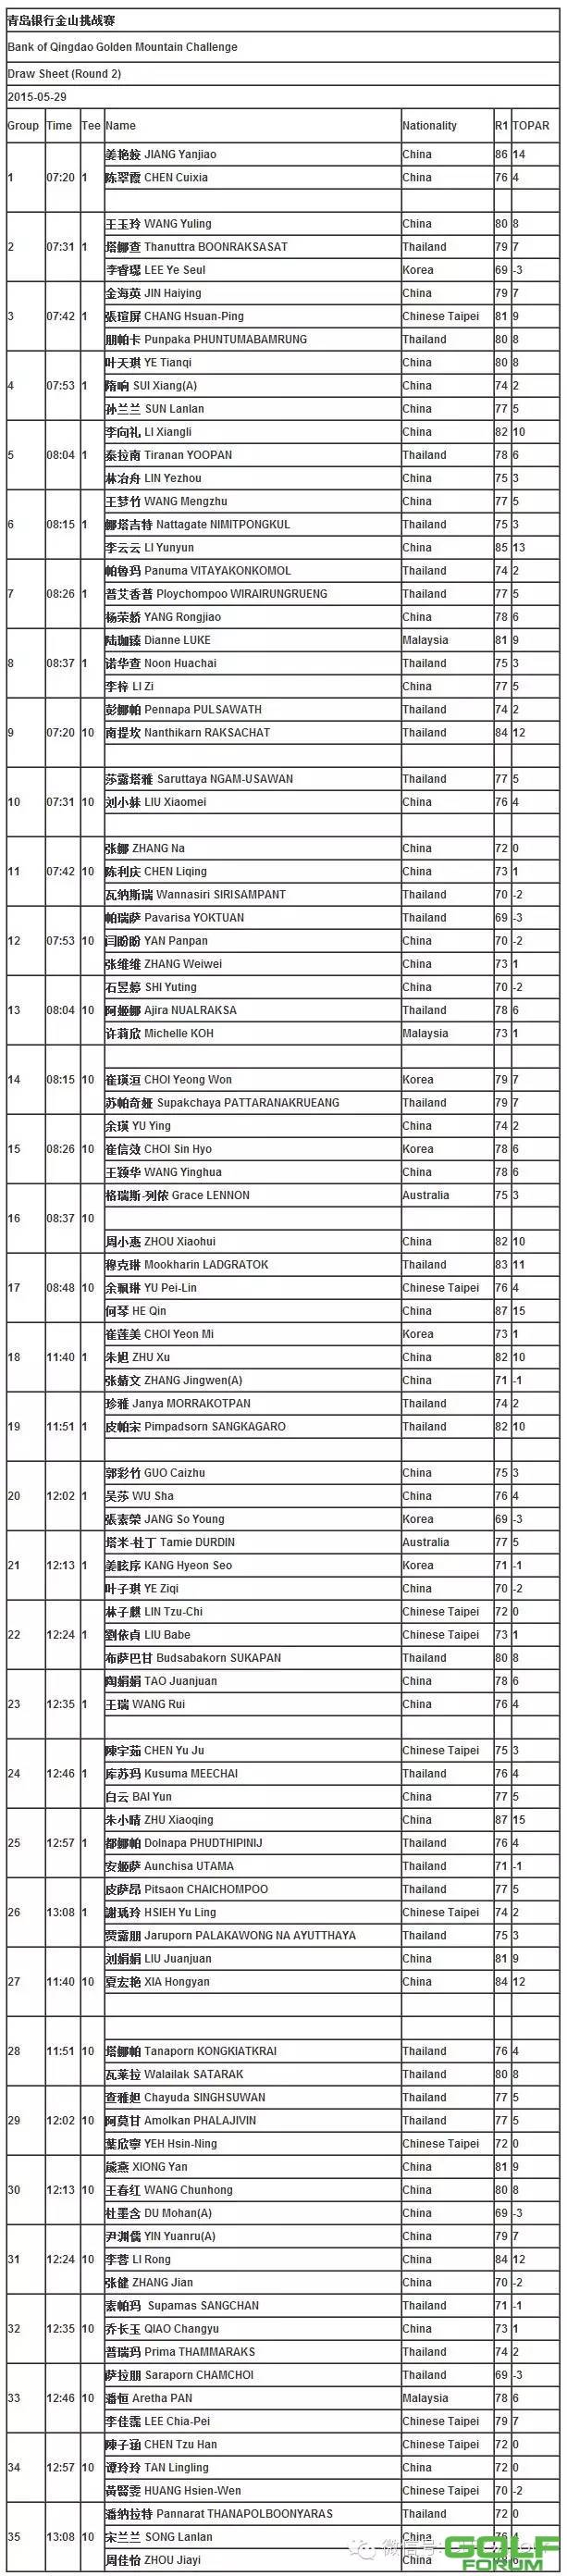 【赛事信息】2015青岛银行·金山挑战赛次轮分组表